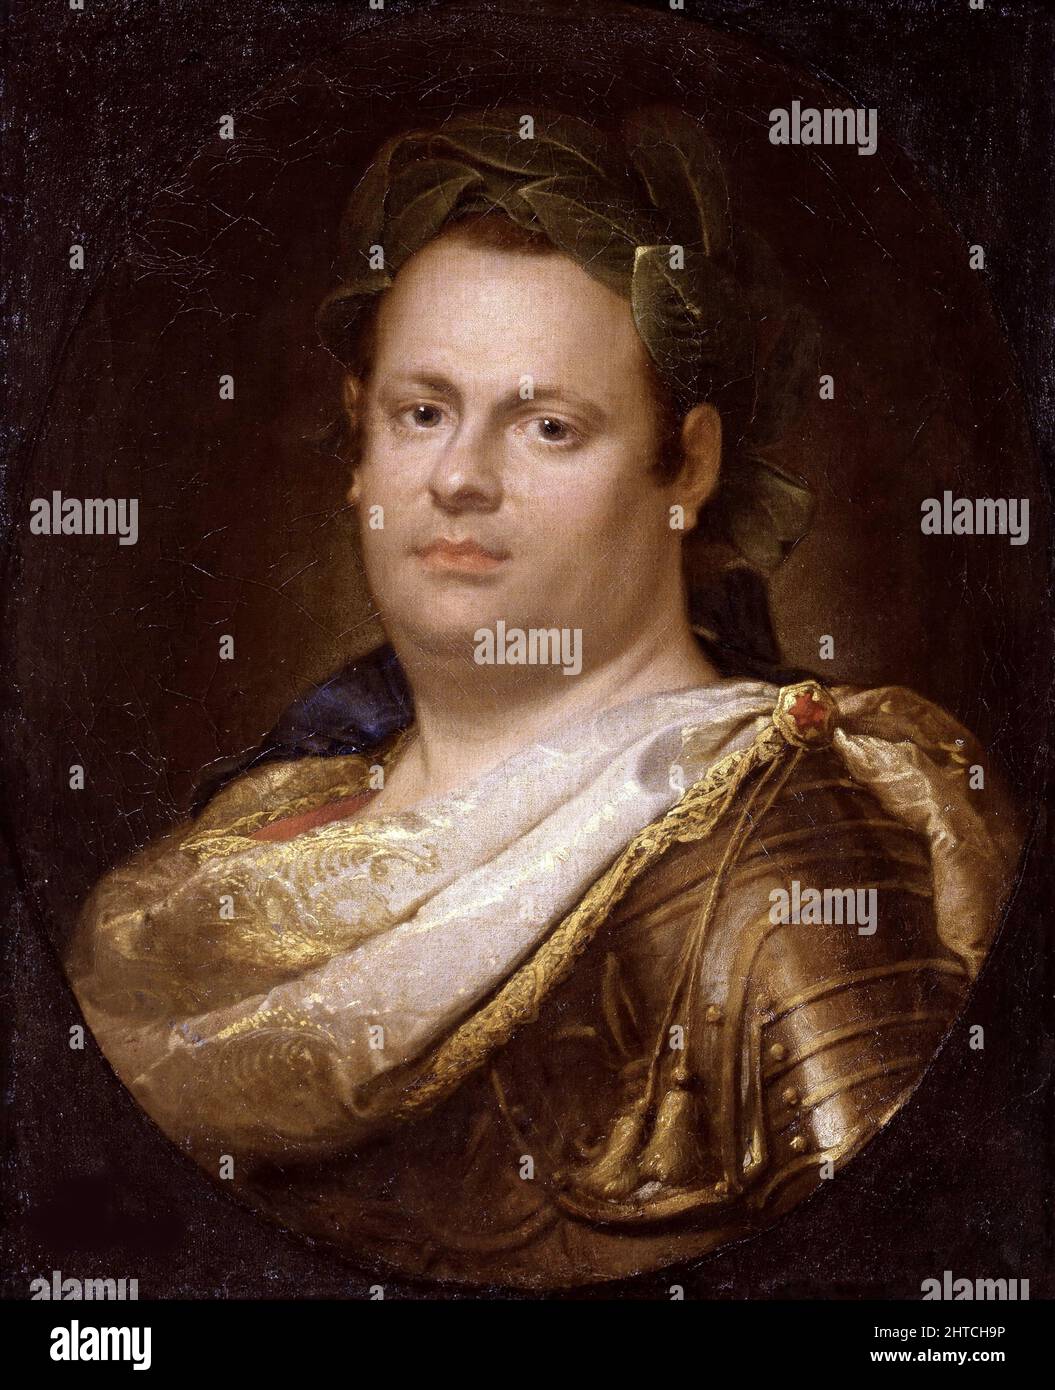 Imperatore Vitellio, 1702. Trovato nella Collezione dell'Accademia Carrara di Bergamo. Foto Stock